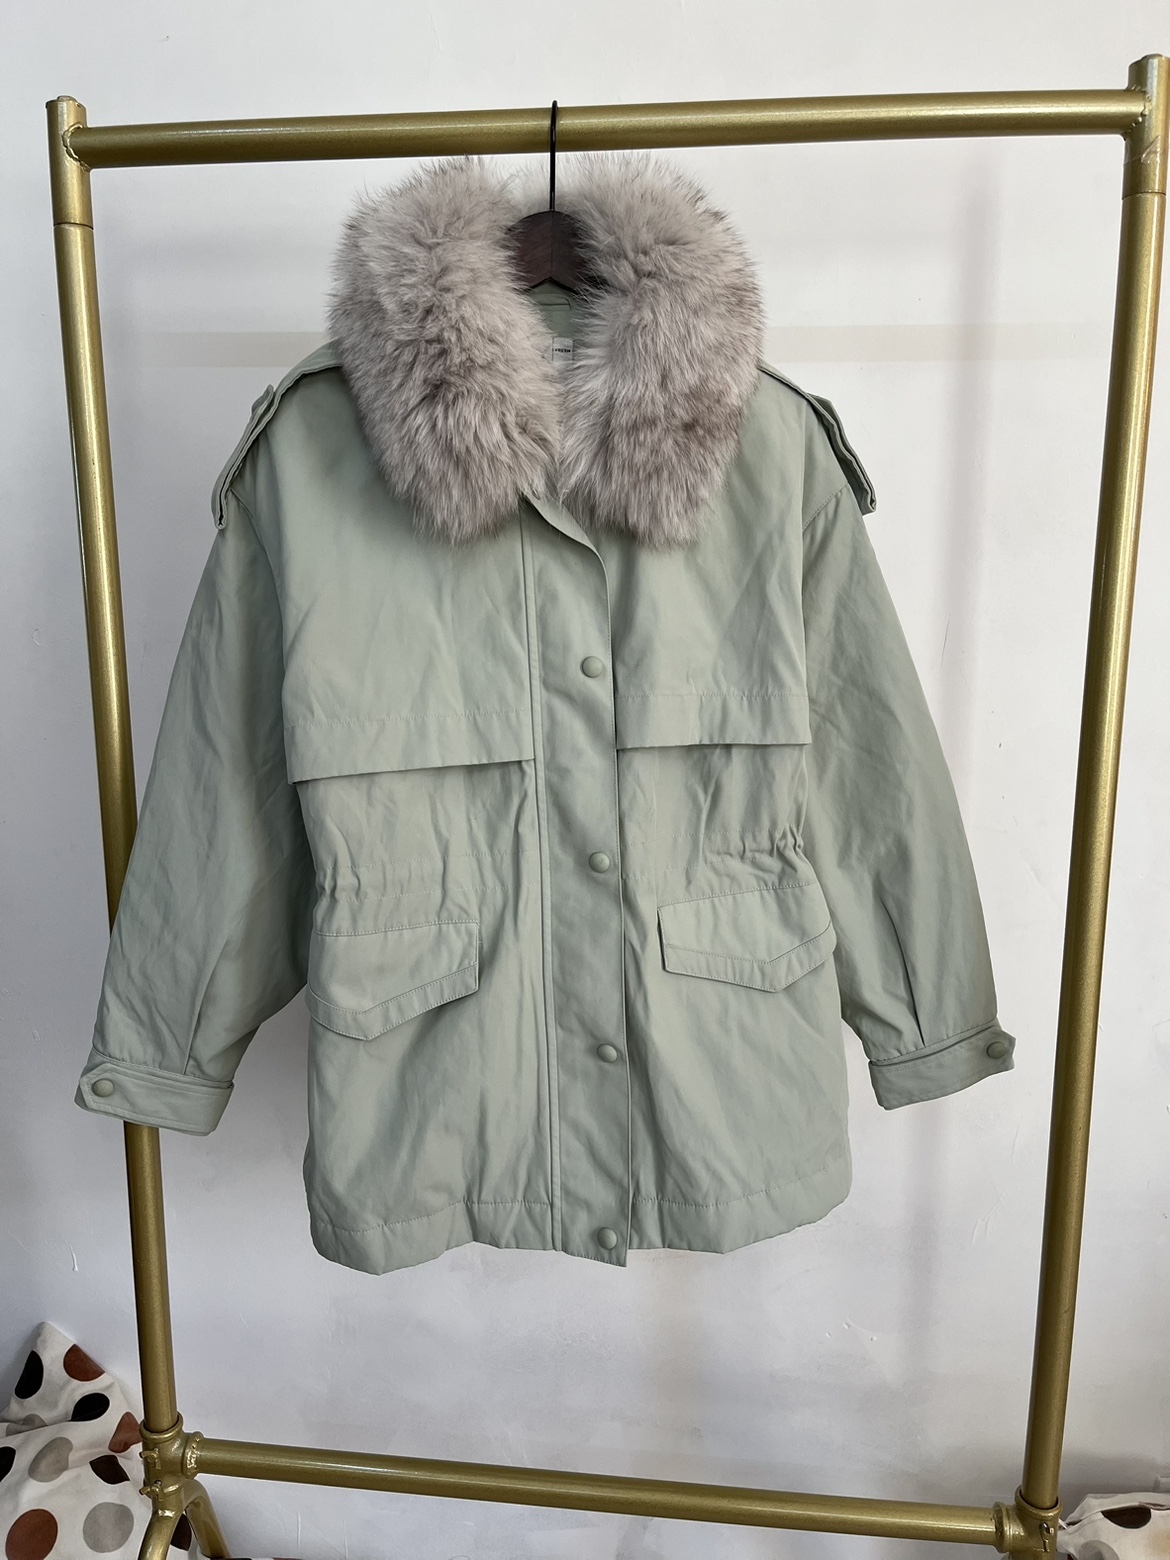 丽丽品牌正品Lily专柜新品 冬季保暖外套 薄荷绿色毛领羽绒外套